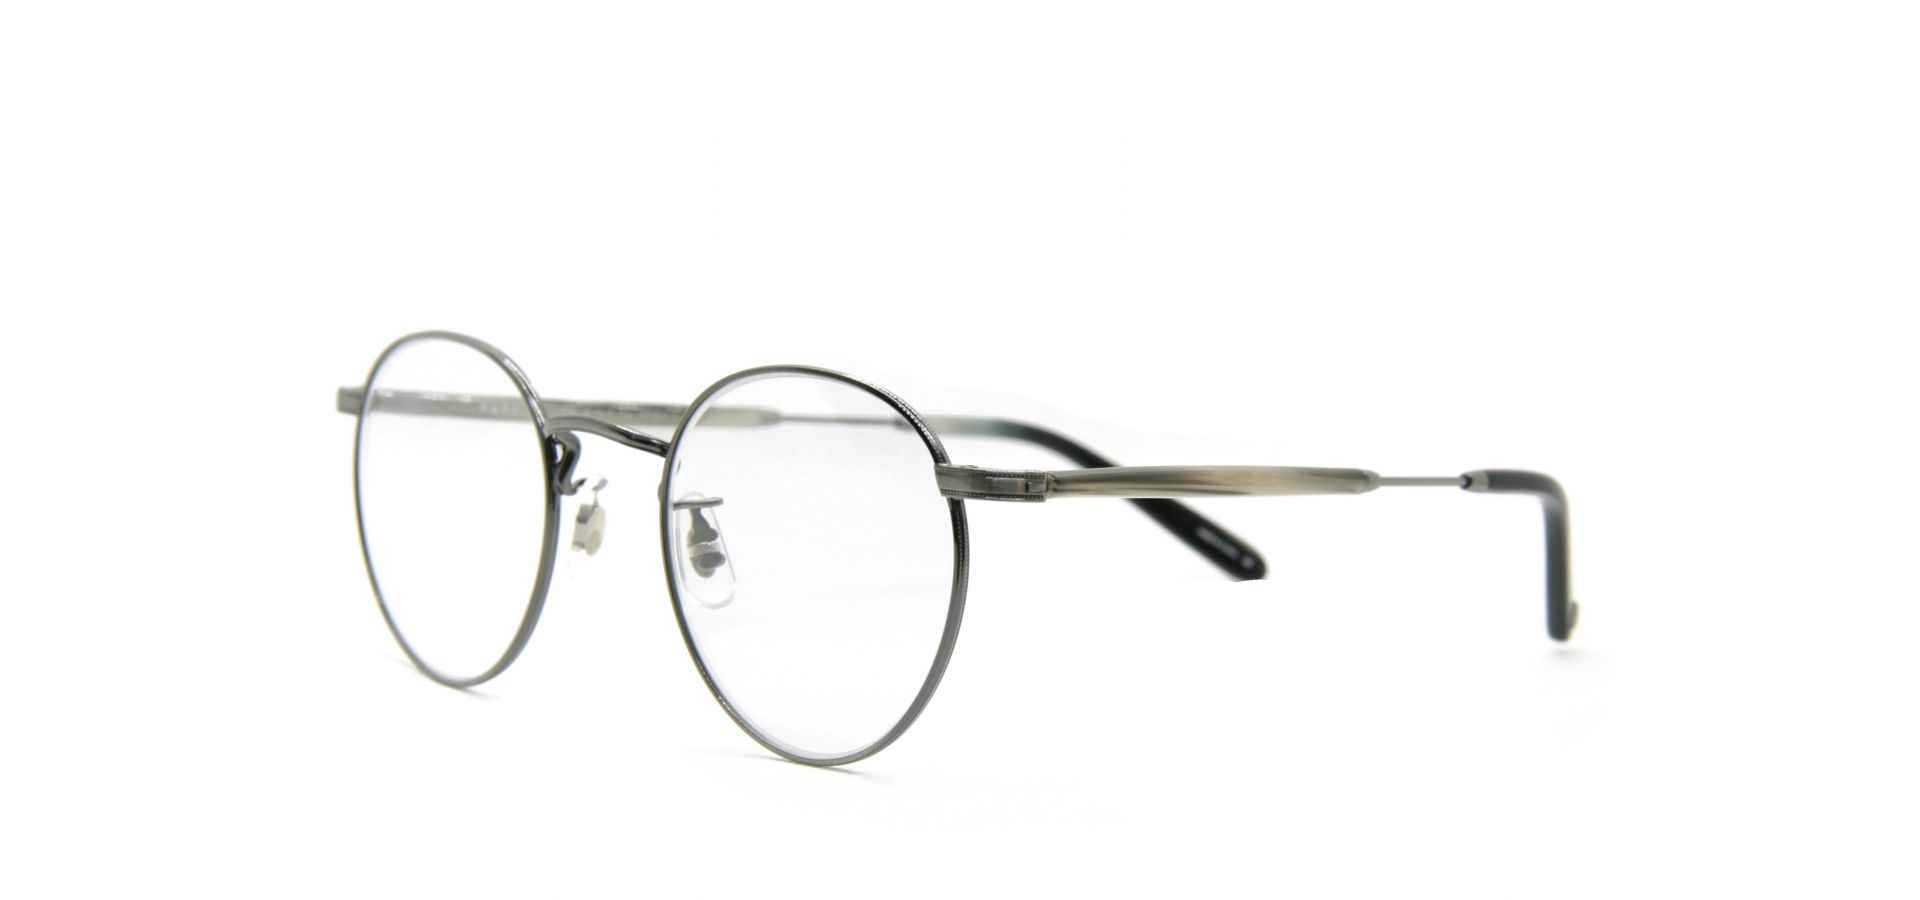 Korekcijska očala Garrett Leight 3005-46-PW-BA: Velikost: 46/22, Spol: unisex, Material: acetat/kovinska